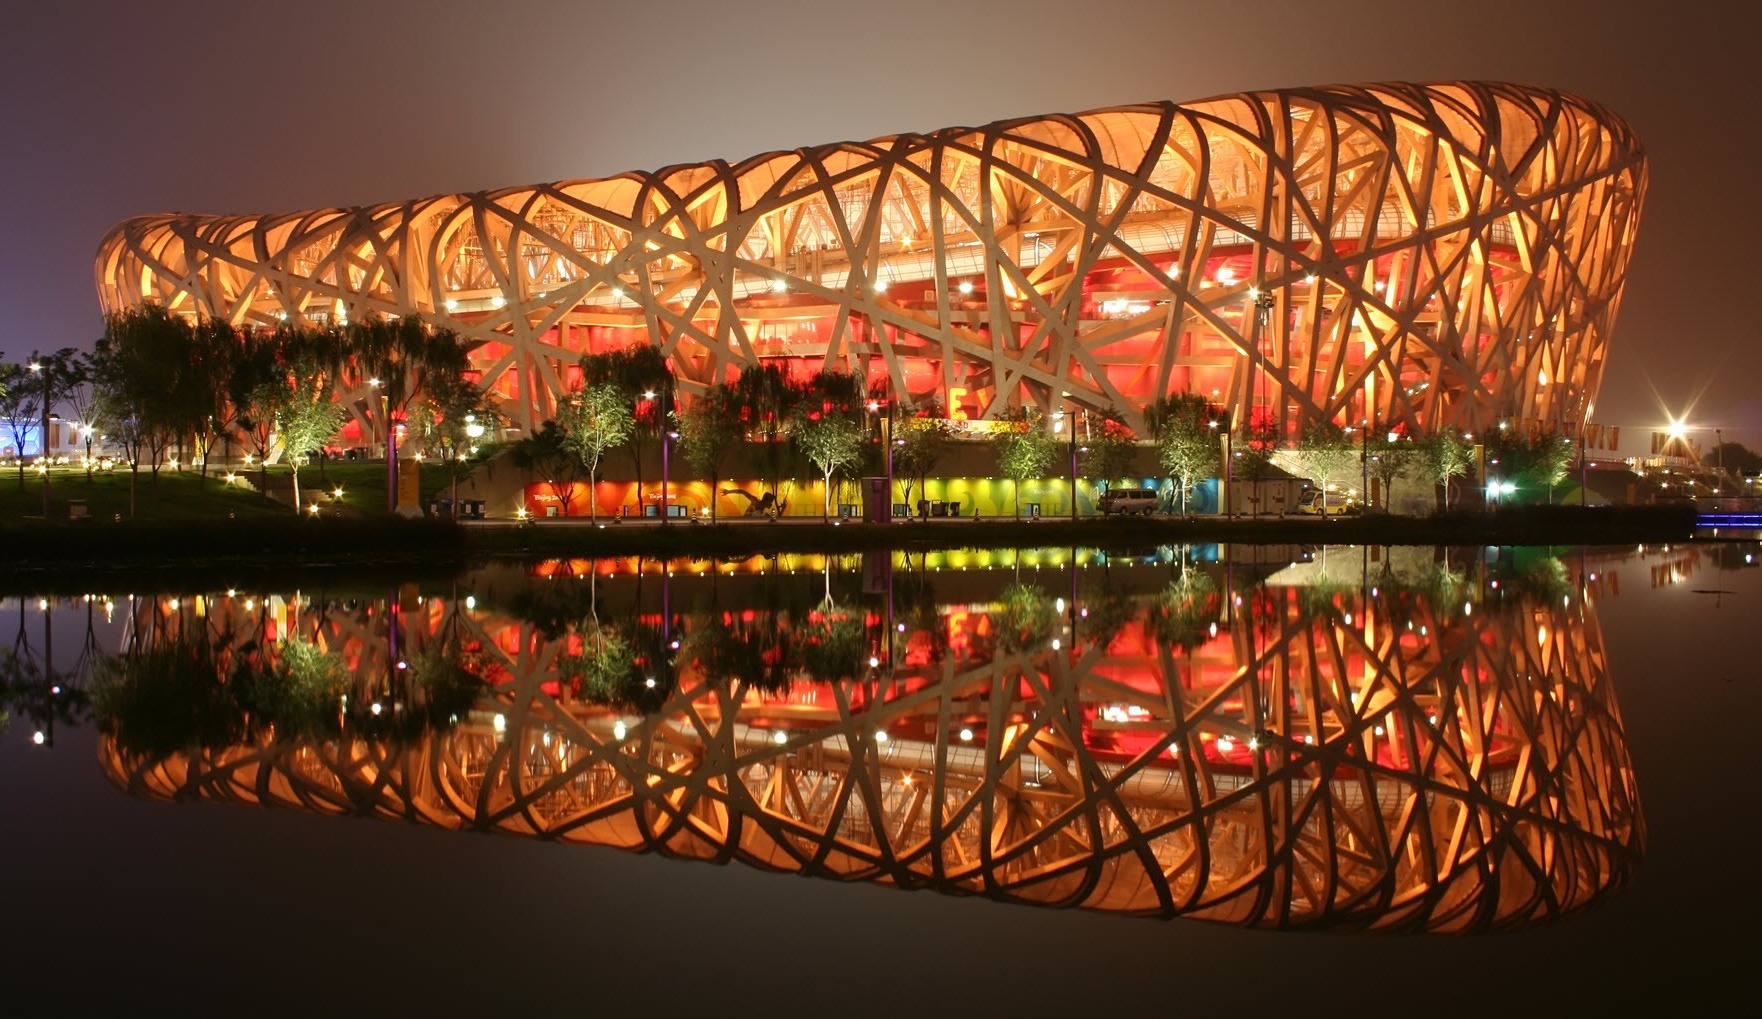 Juegos de seducción Íñigo García Odiaga Beijing National Stadium. Architect Herzog & de Meuron, ArupSport, China Architectural Design & Research G